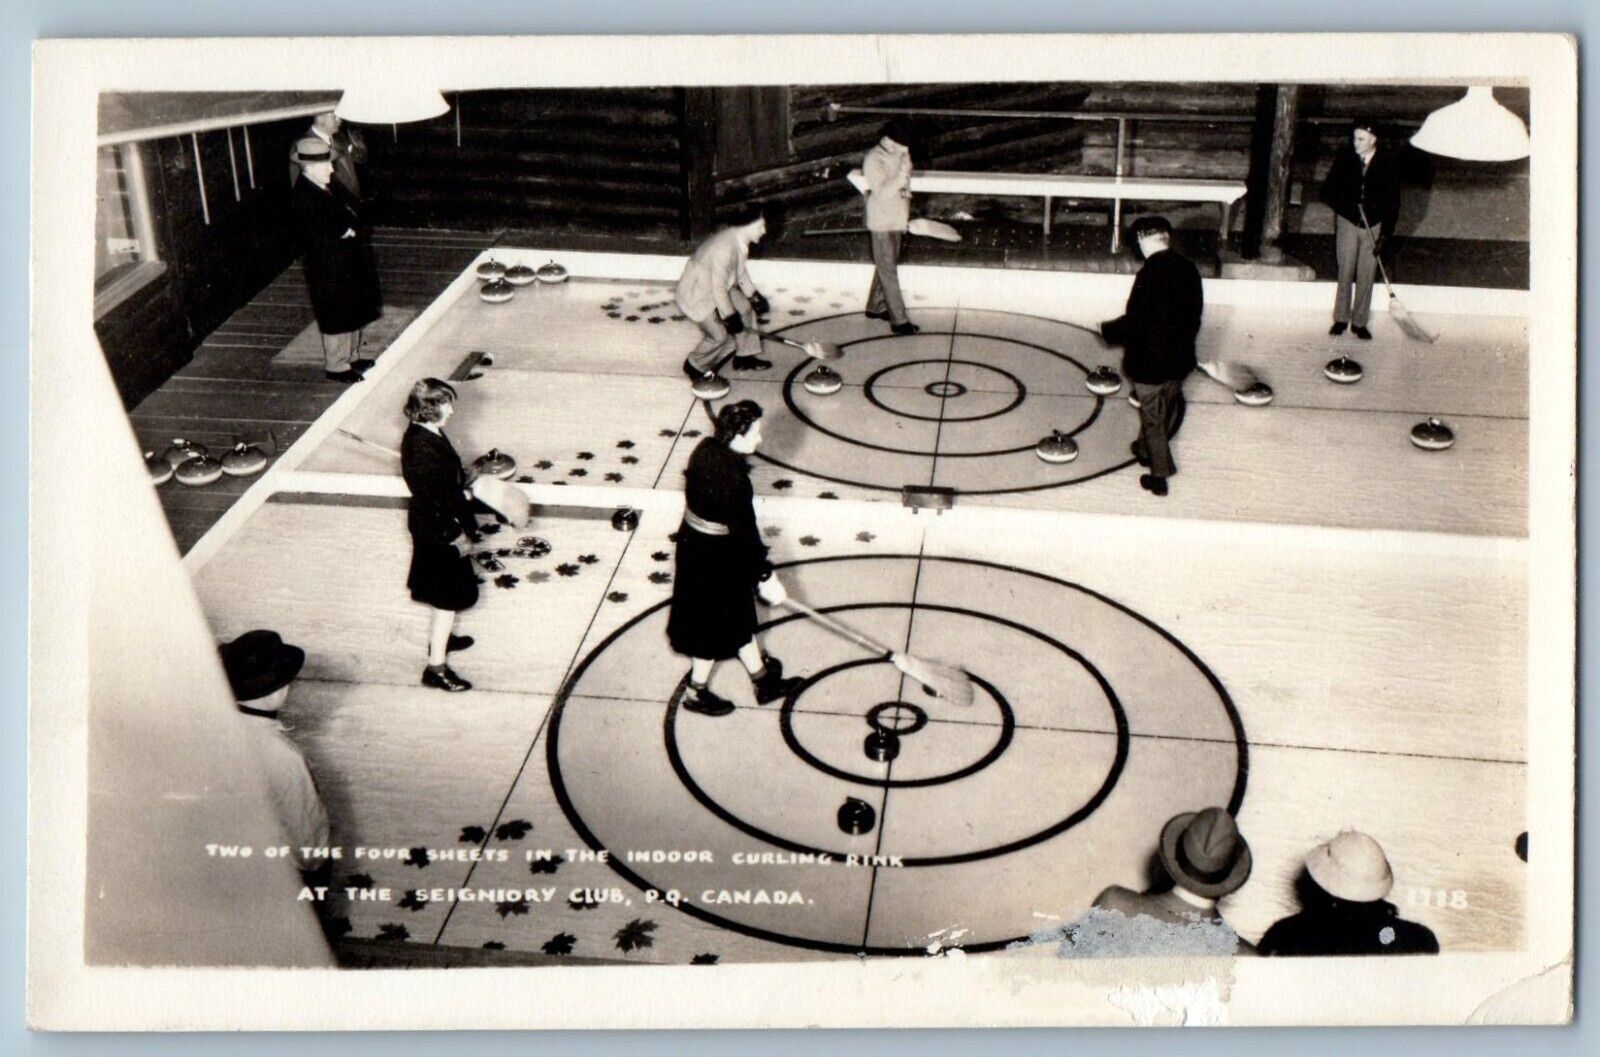 c1940s Indoor Curling Rink Seignedry Club Quebec Canada RPPC Photo Postcard